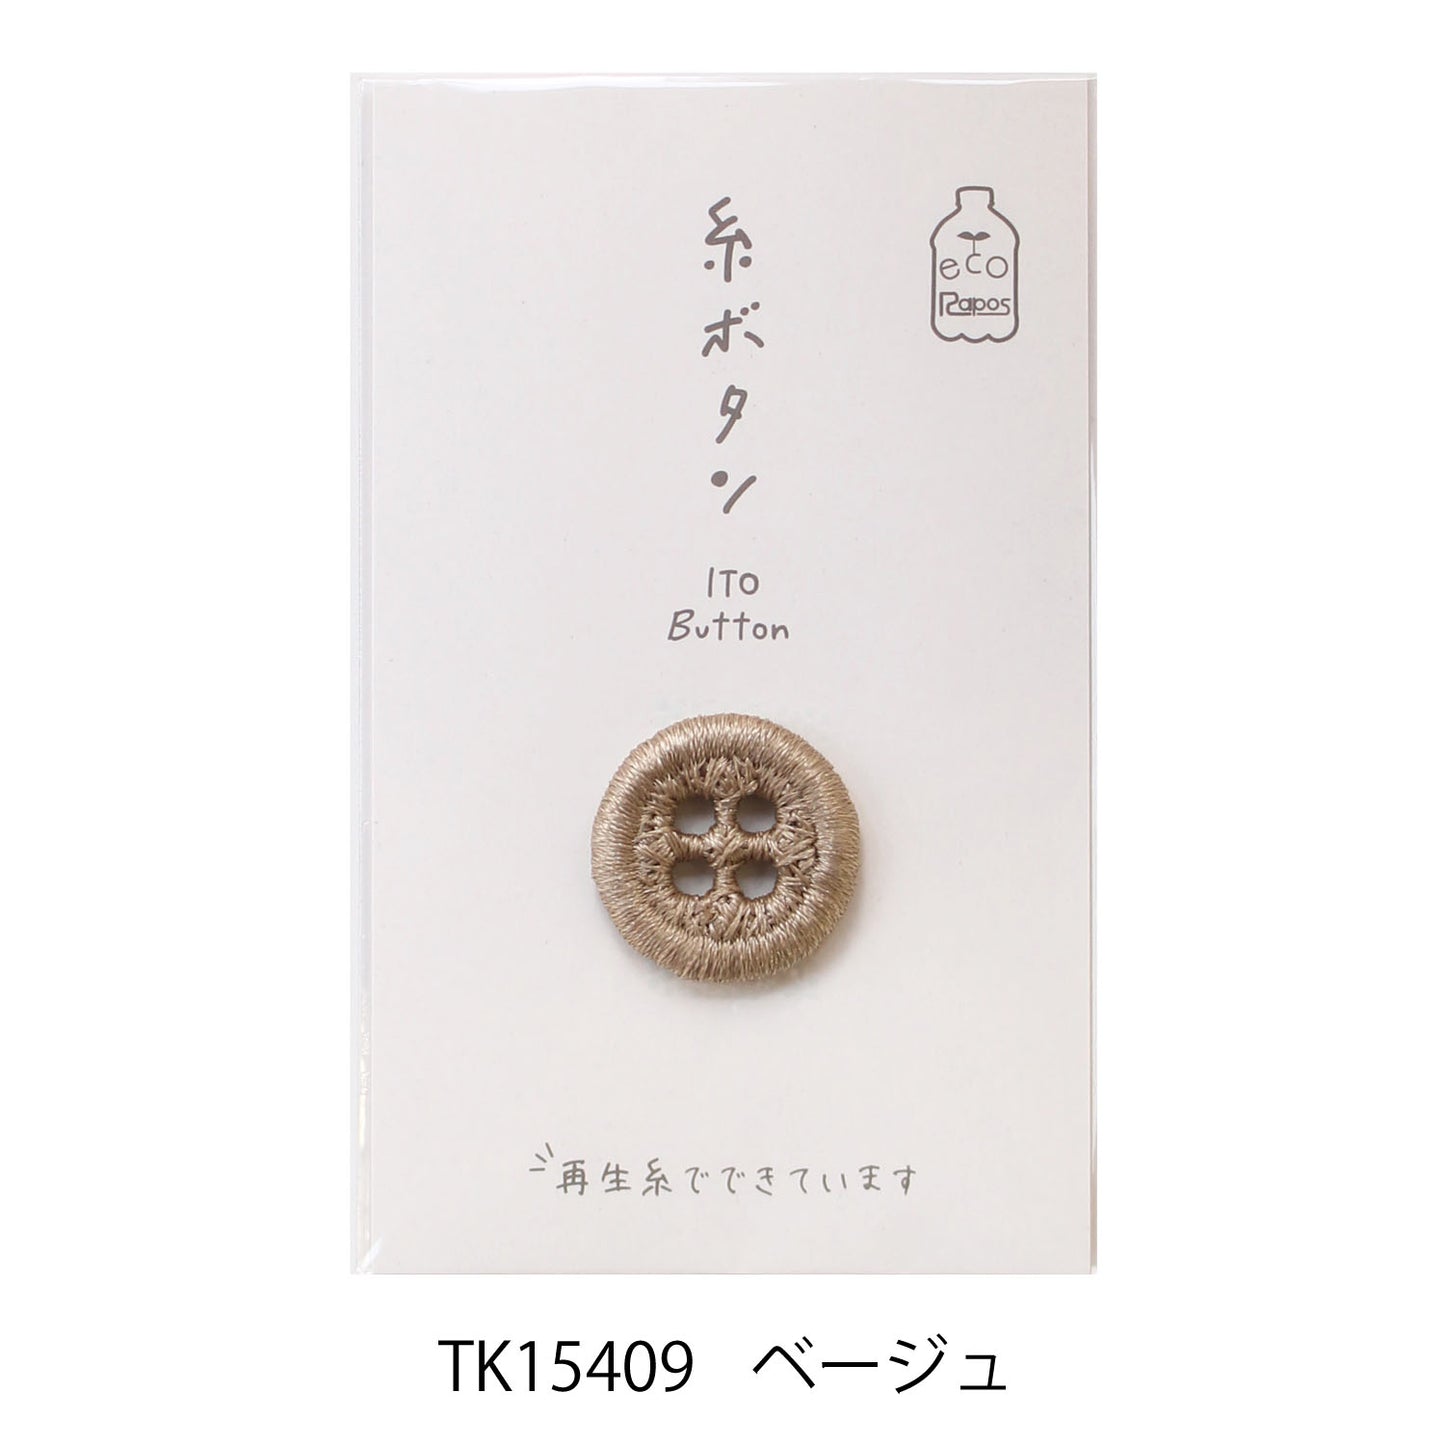 Kawaguchi eco-friendly thread buttons 環保線鈕 18mm